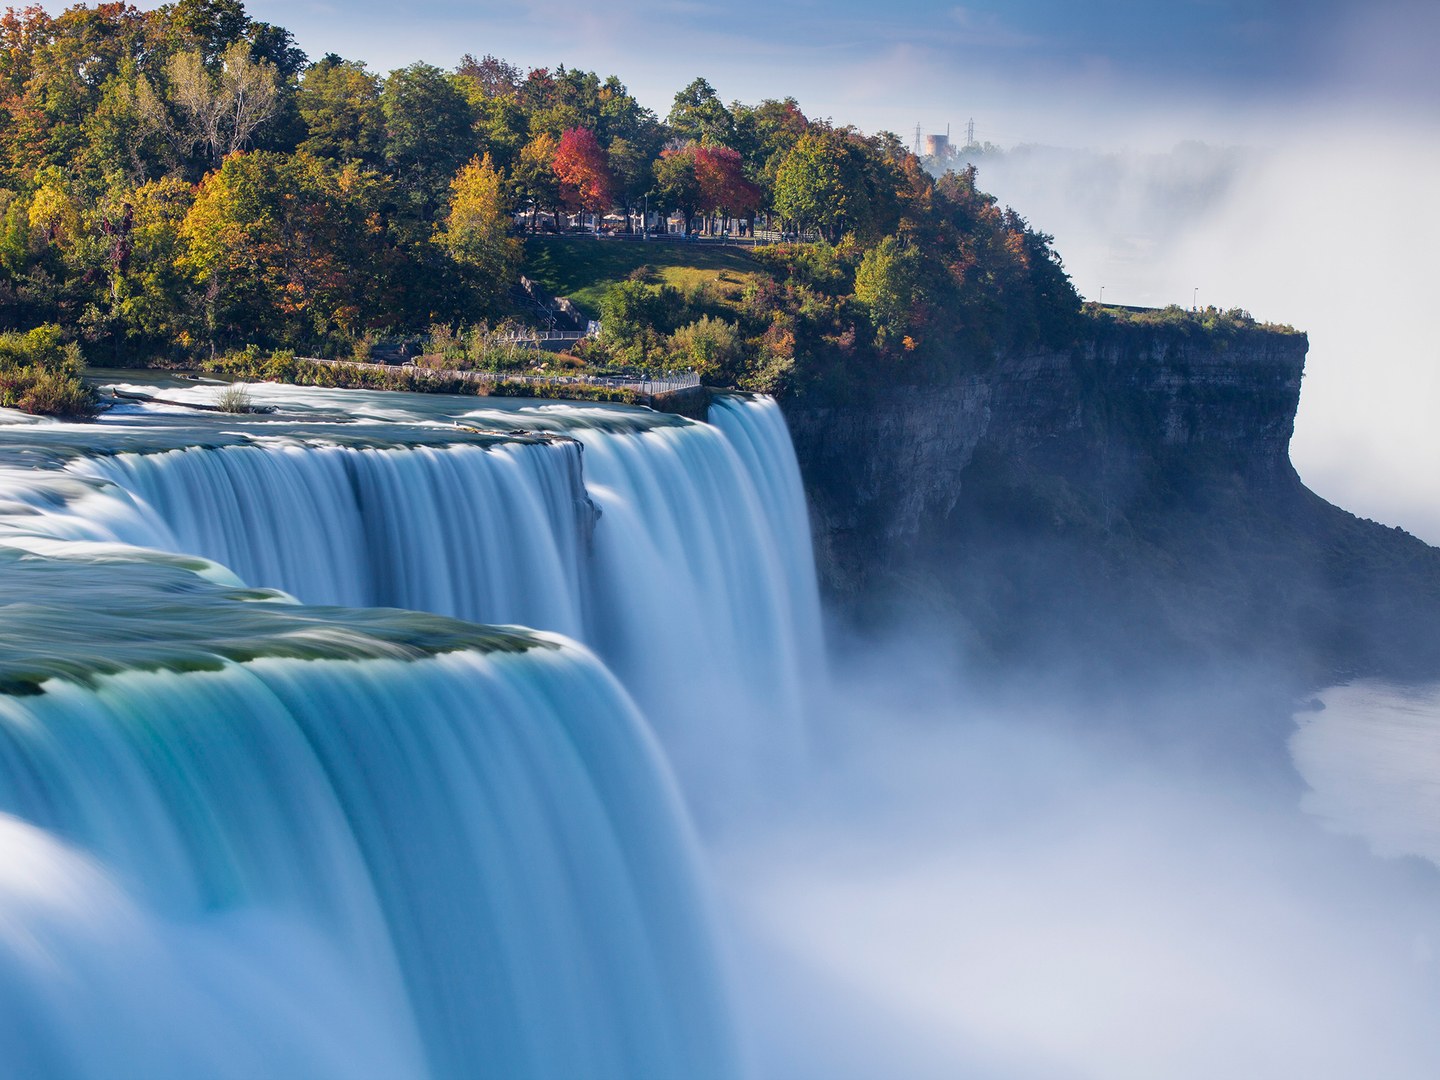 Thác Niagara không chỉ là một thác, mà có tới ba thác nước gần nhau, nằm ở cả hai bên biên giới nước Mỹ và nước Canada, hợp thành một tổng thể cực kỳ hoành tráng. Năm 2011, số du khách đến thăm thác Niagara là 30 triệu người.